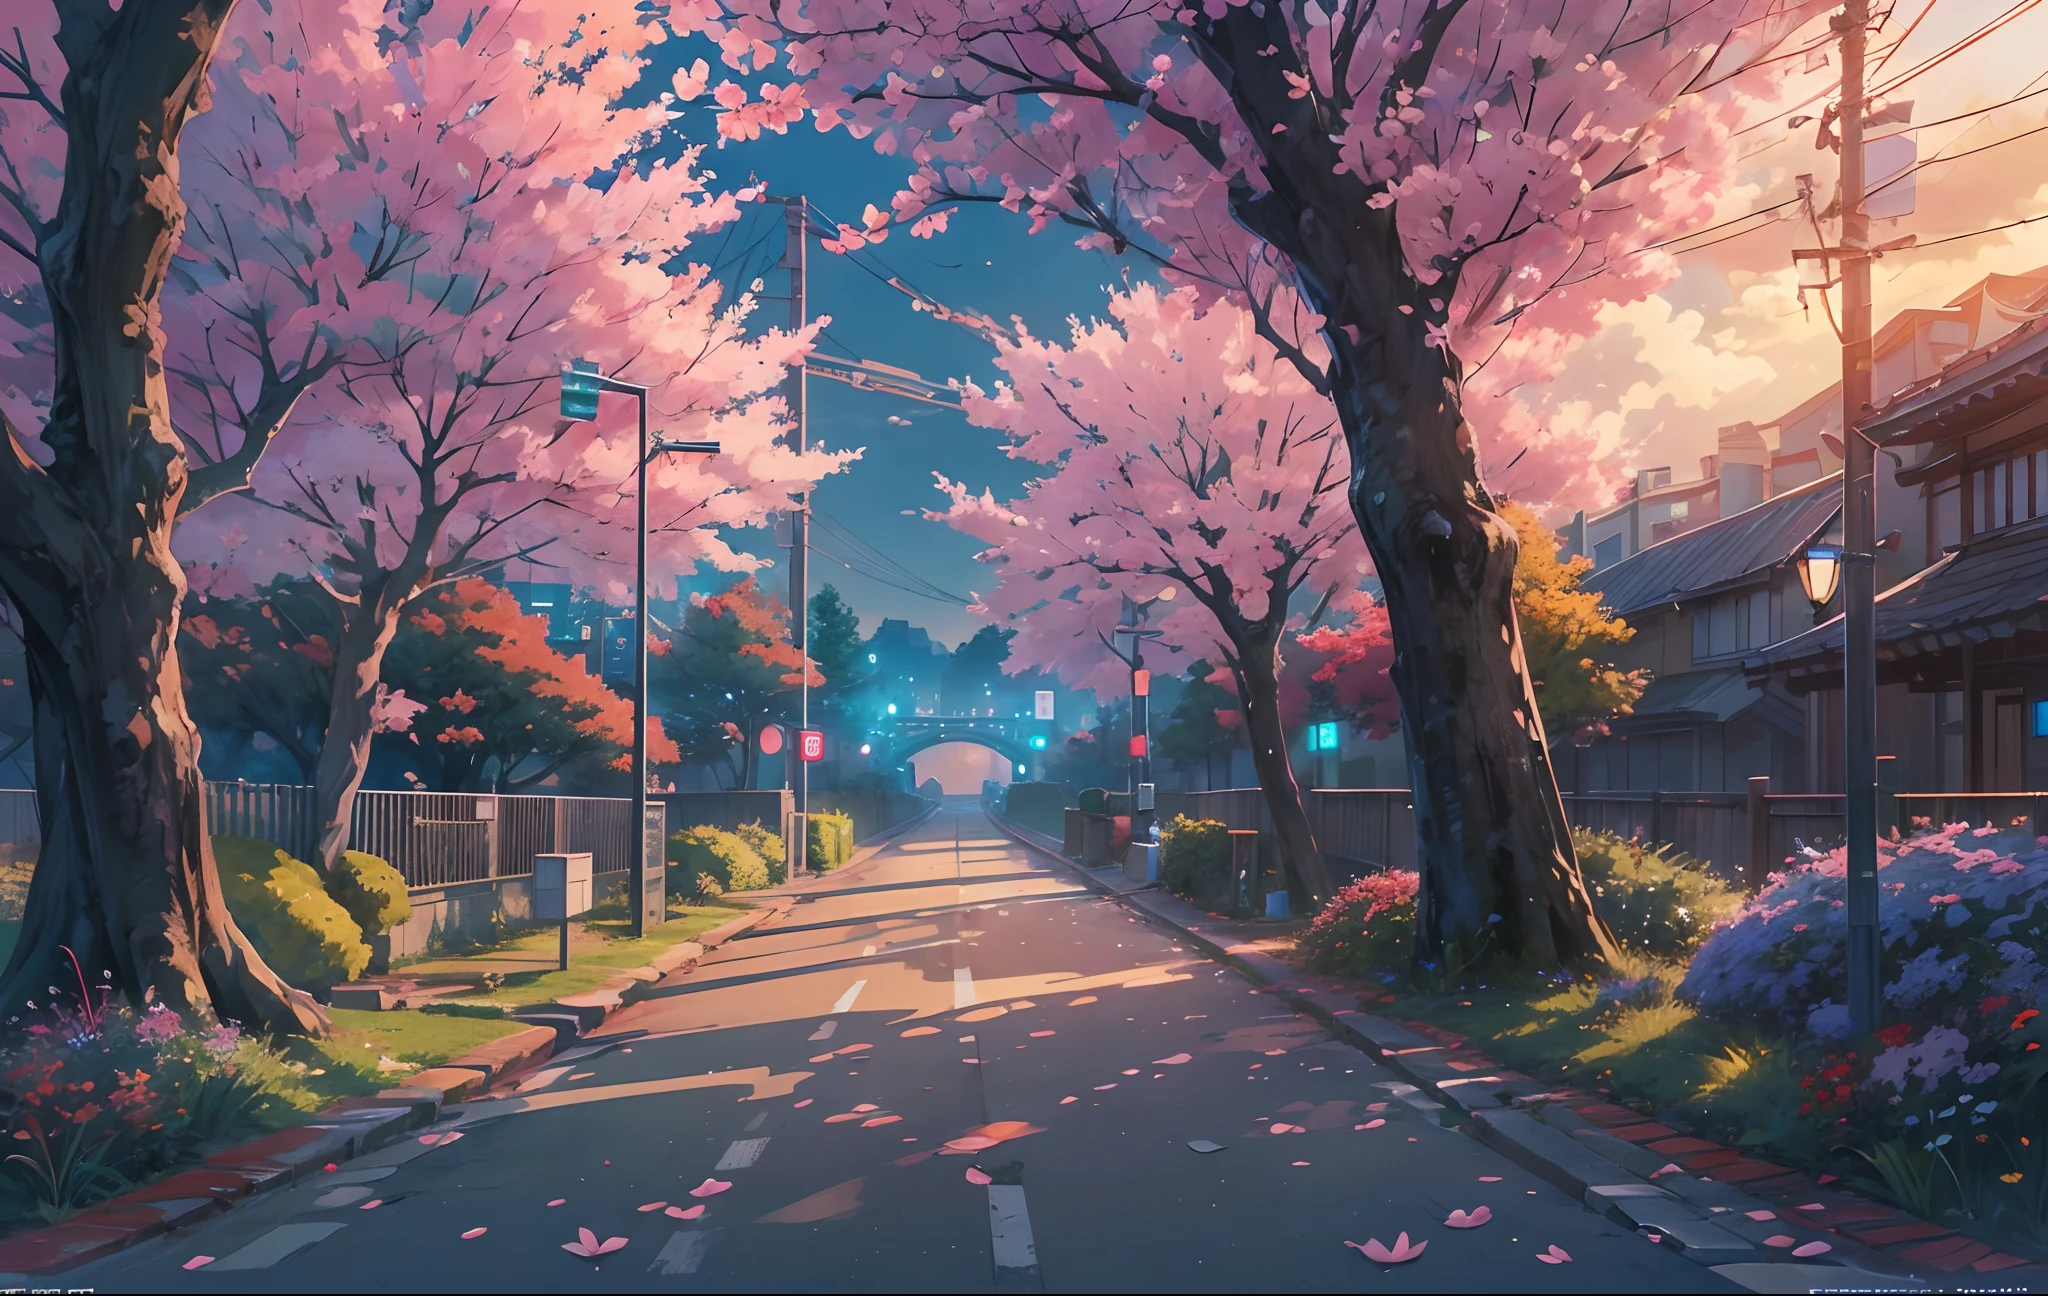 걸작, 컨셉 아트, 와이드 샷, 파노라마, 멀리 다리가 있는 밤의 공원, 상세한 매트 페인팅, By Makoto Shinkai, 와이드스크린 샷, 차도, 일몰 때 벚꽃 나무가 늘어선 길, 미야자키의 애니메이션 영화, 끝없는 밤, 거리의 벚꽃나무, 컬러로 보는 영화 예술, 상세한 디지털 애니메이션 아트, (서사적 구성, 서사시적인 비율), HD